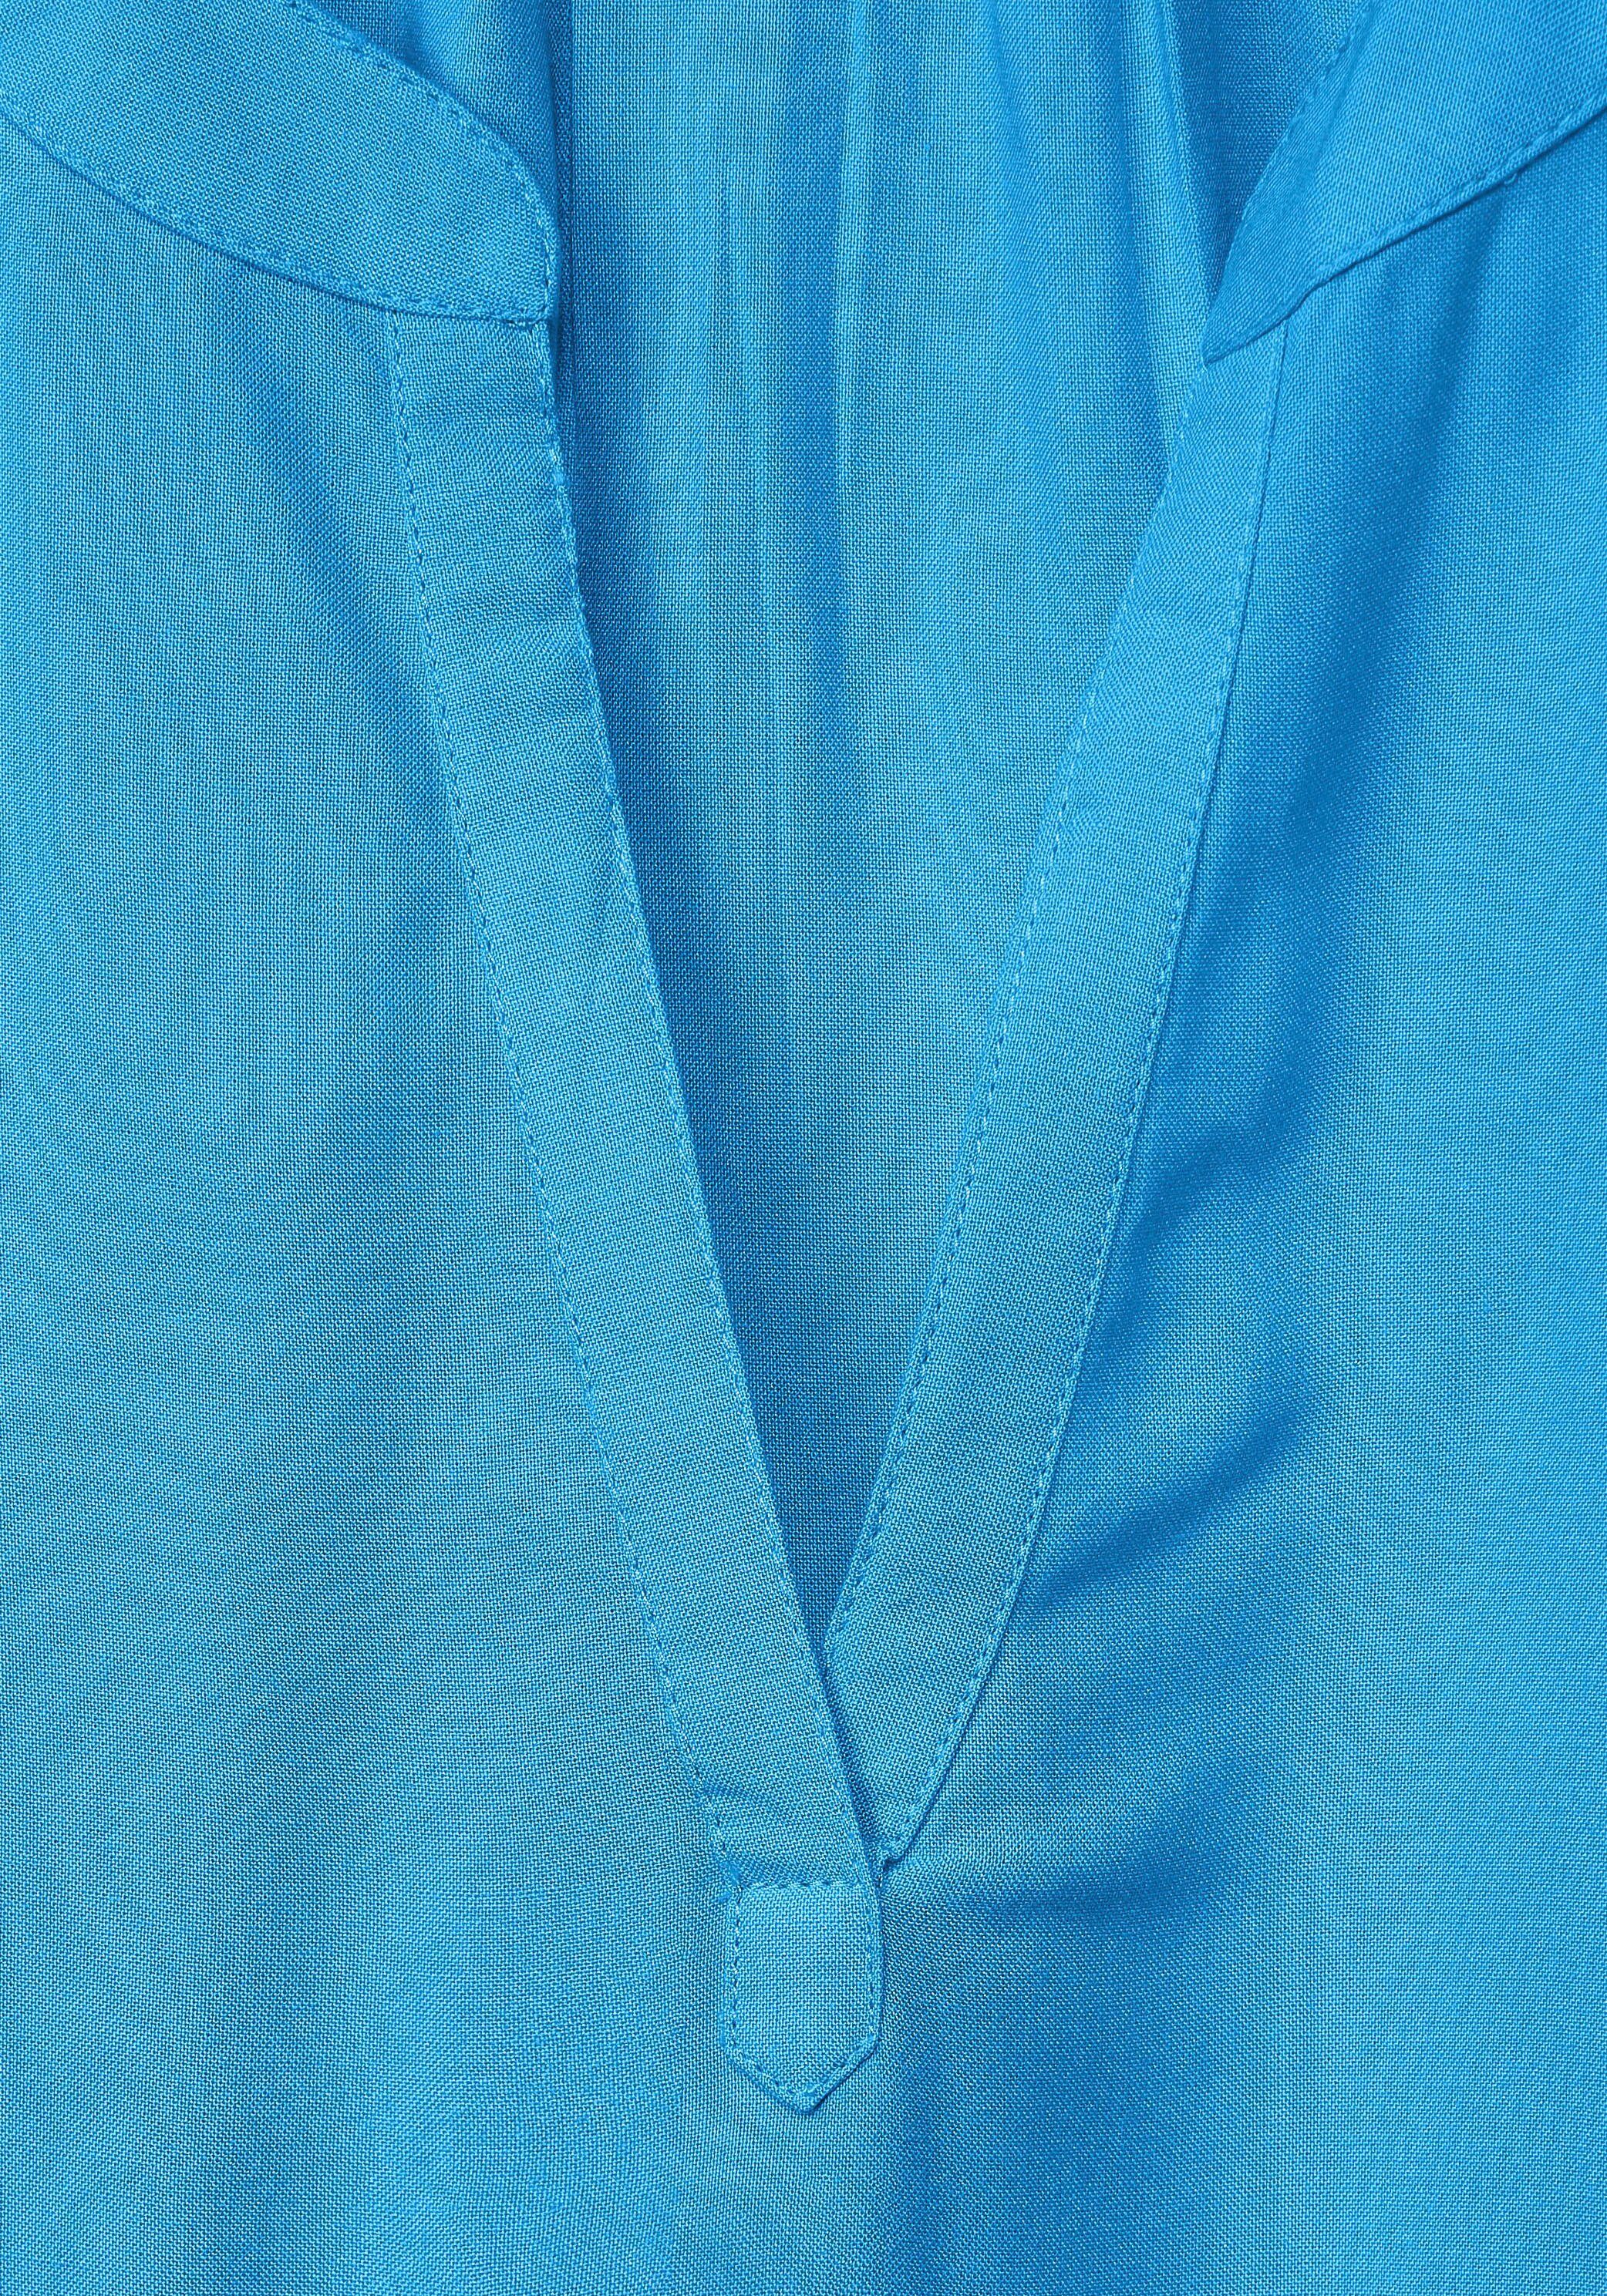 Rundhalsausschnitt ONE mit splash blue Shirtbluse STREET geschlitztem